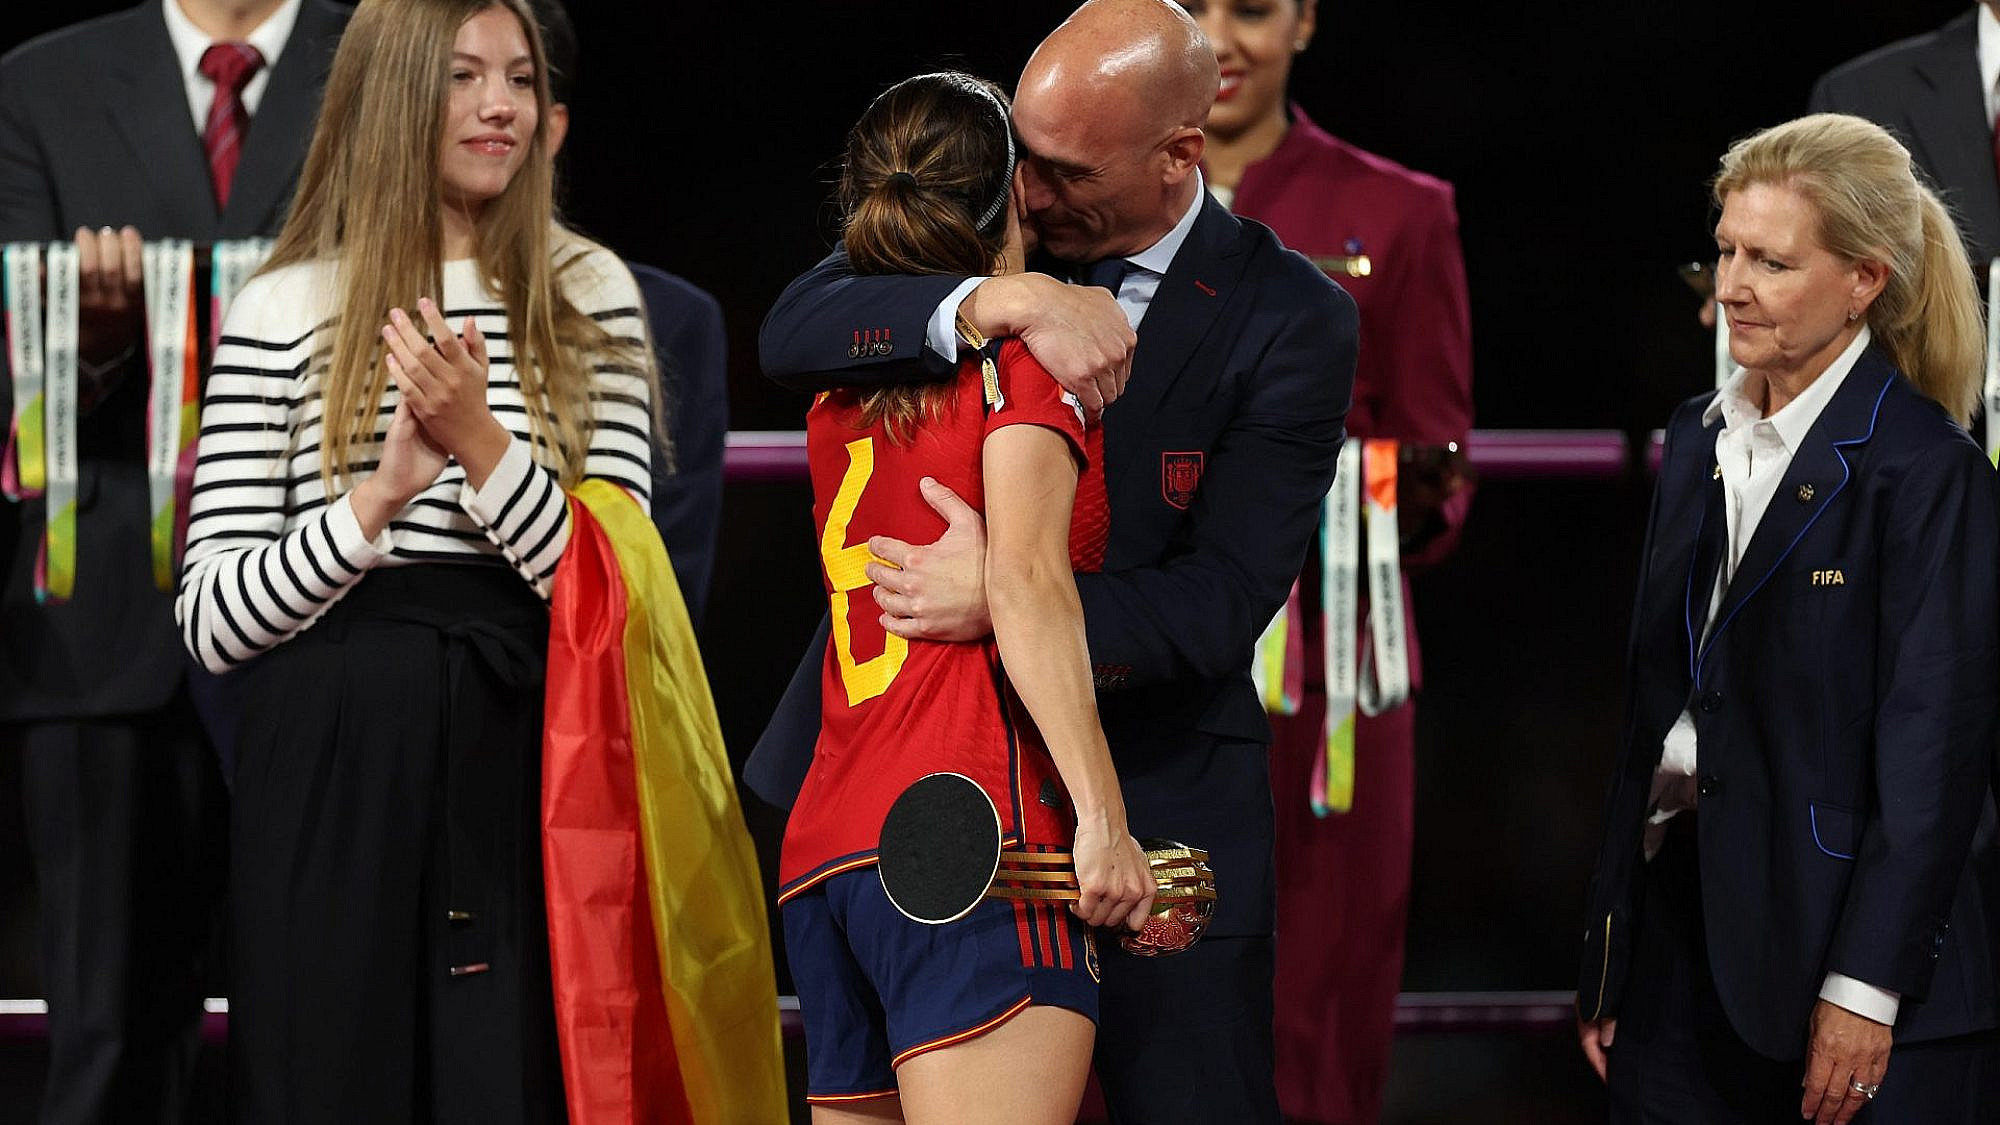 איכס. נשיא ההתאחדות הספרדית לואיס רוביאלס מנשק בפה בכוח את כוכבת הנבחרת ג'ניפר הרמוסו | צילום: Gettyimages